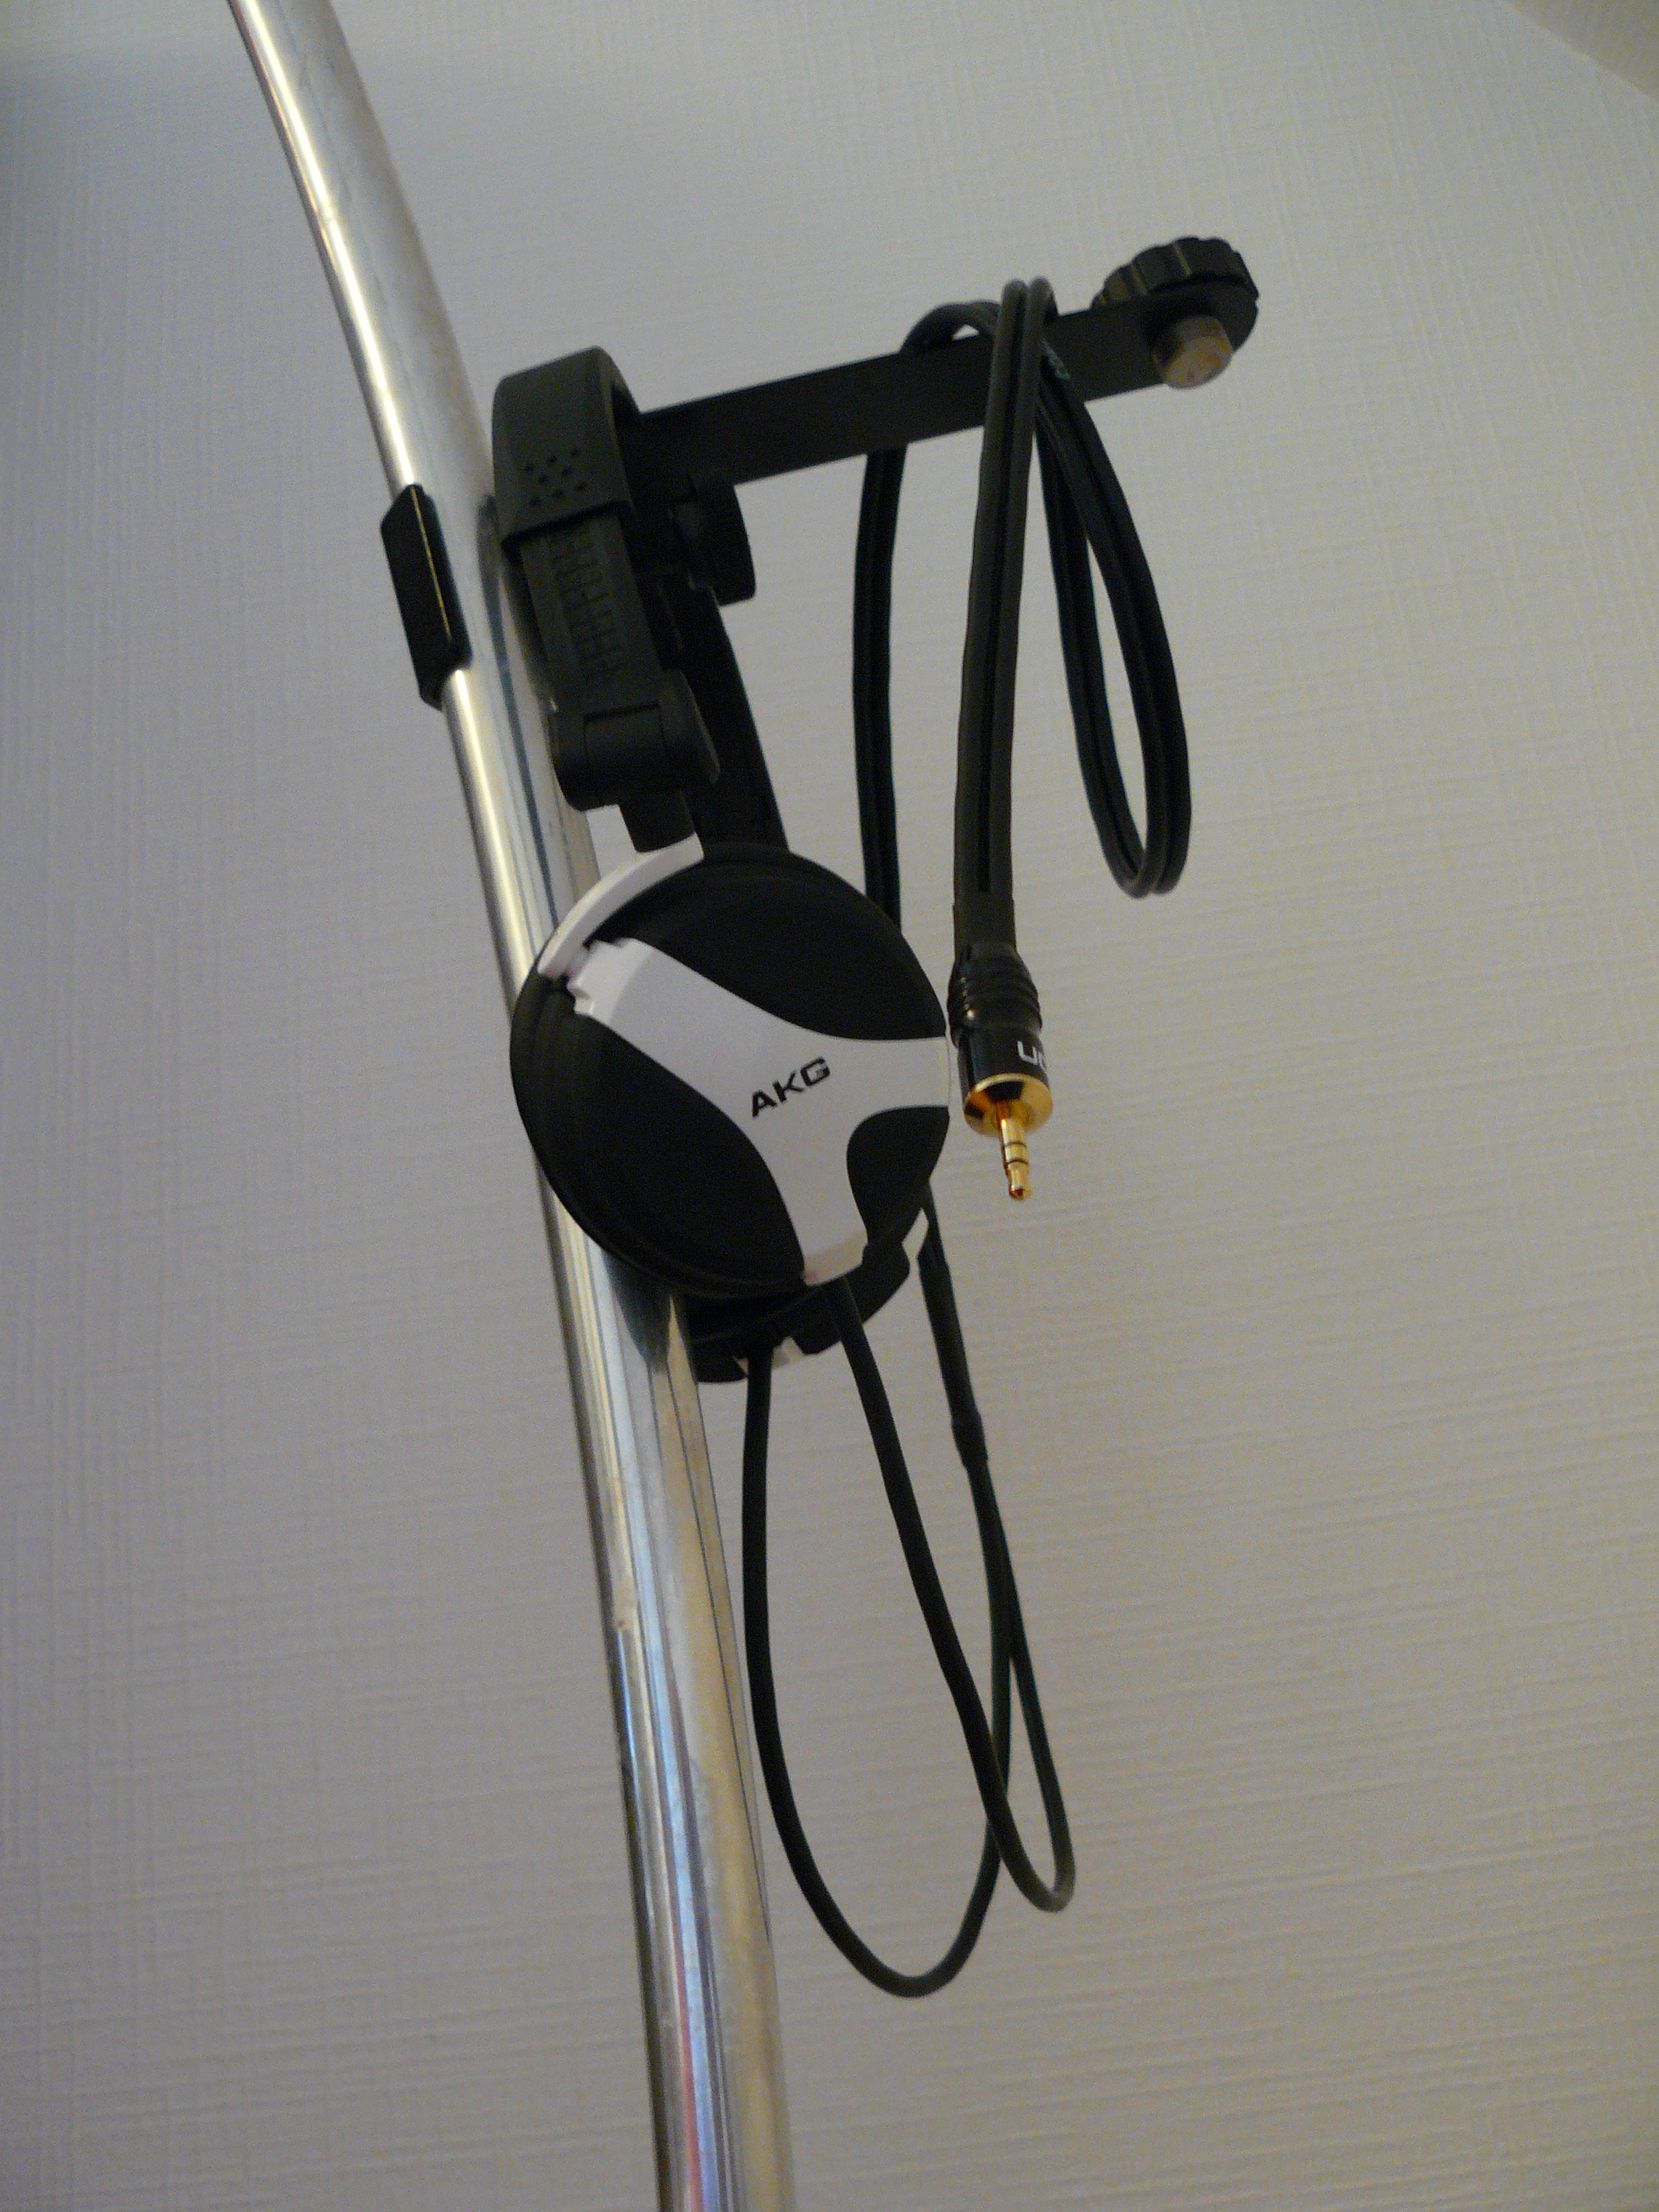 Oído reemplazo Pad Almohadillas reparación repuestos para AKG K518 K518DJ K518LE K81 Sony MDR-NC6 K81dj cojín de Auriculares de Diadema con Orejeras